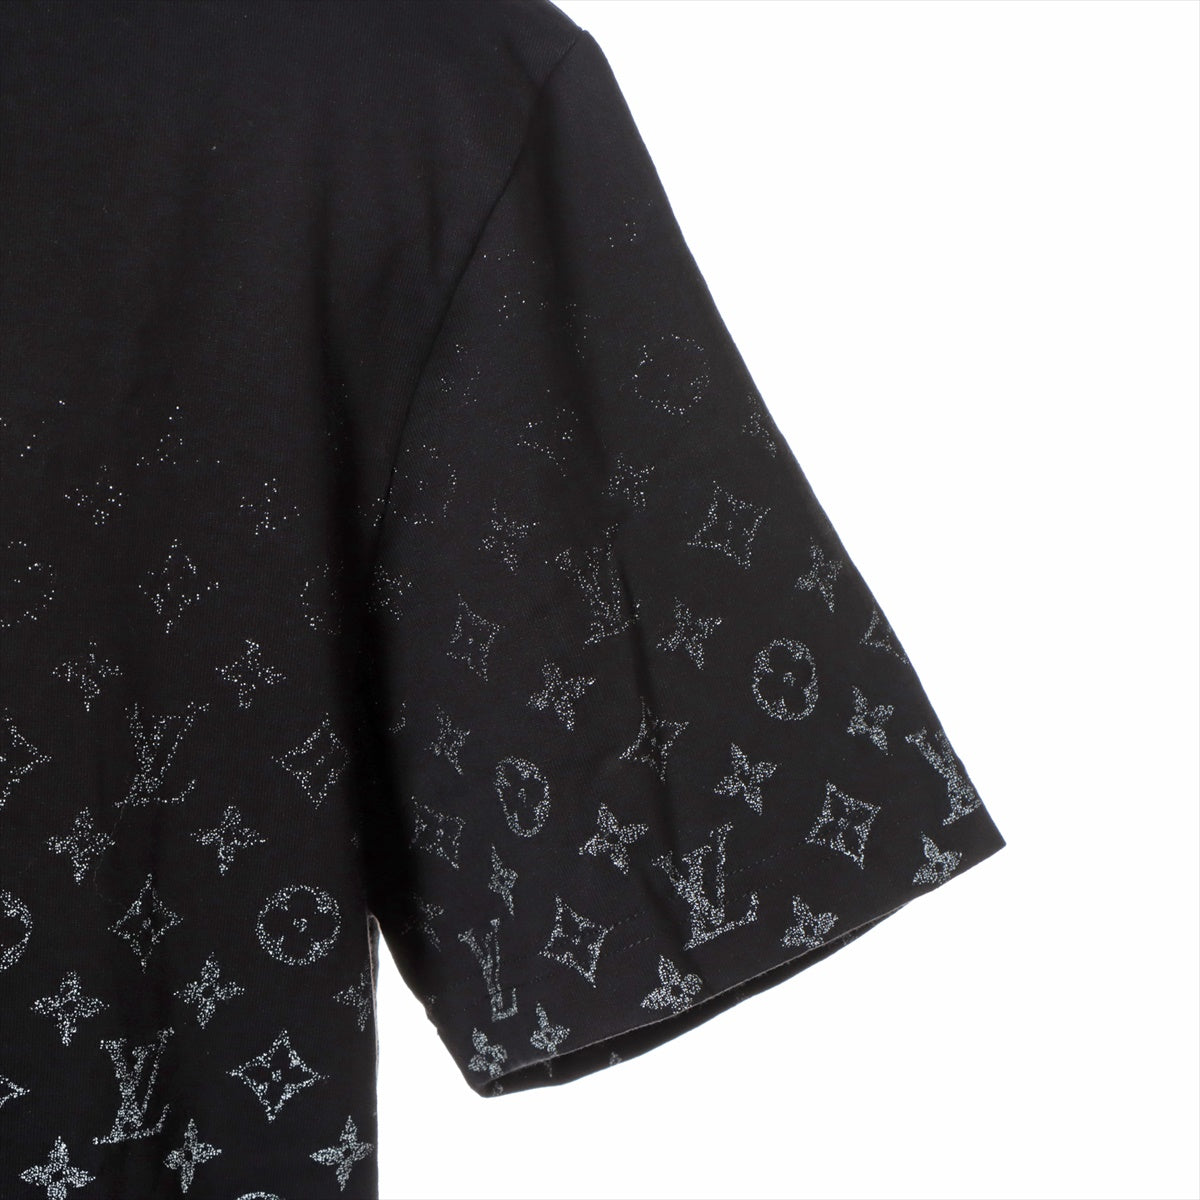 Louis Vuitton 23AW Cotton T-shirt L Men's Black  Monogram gradient RM232Q